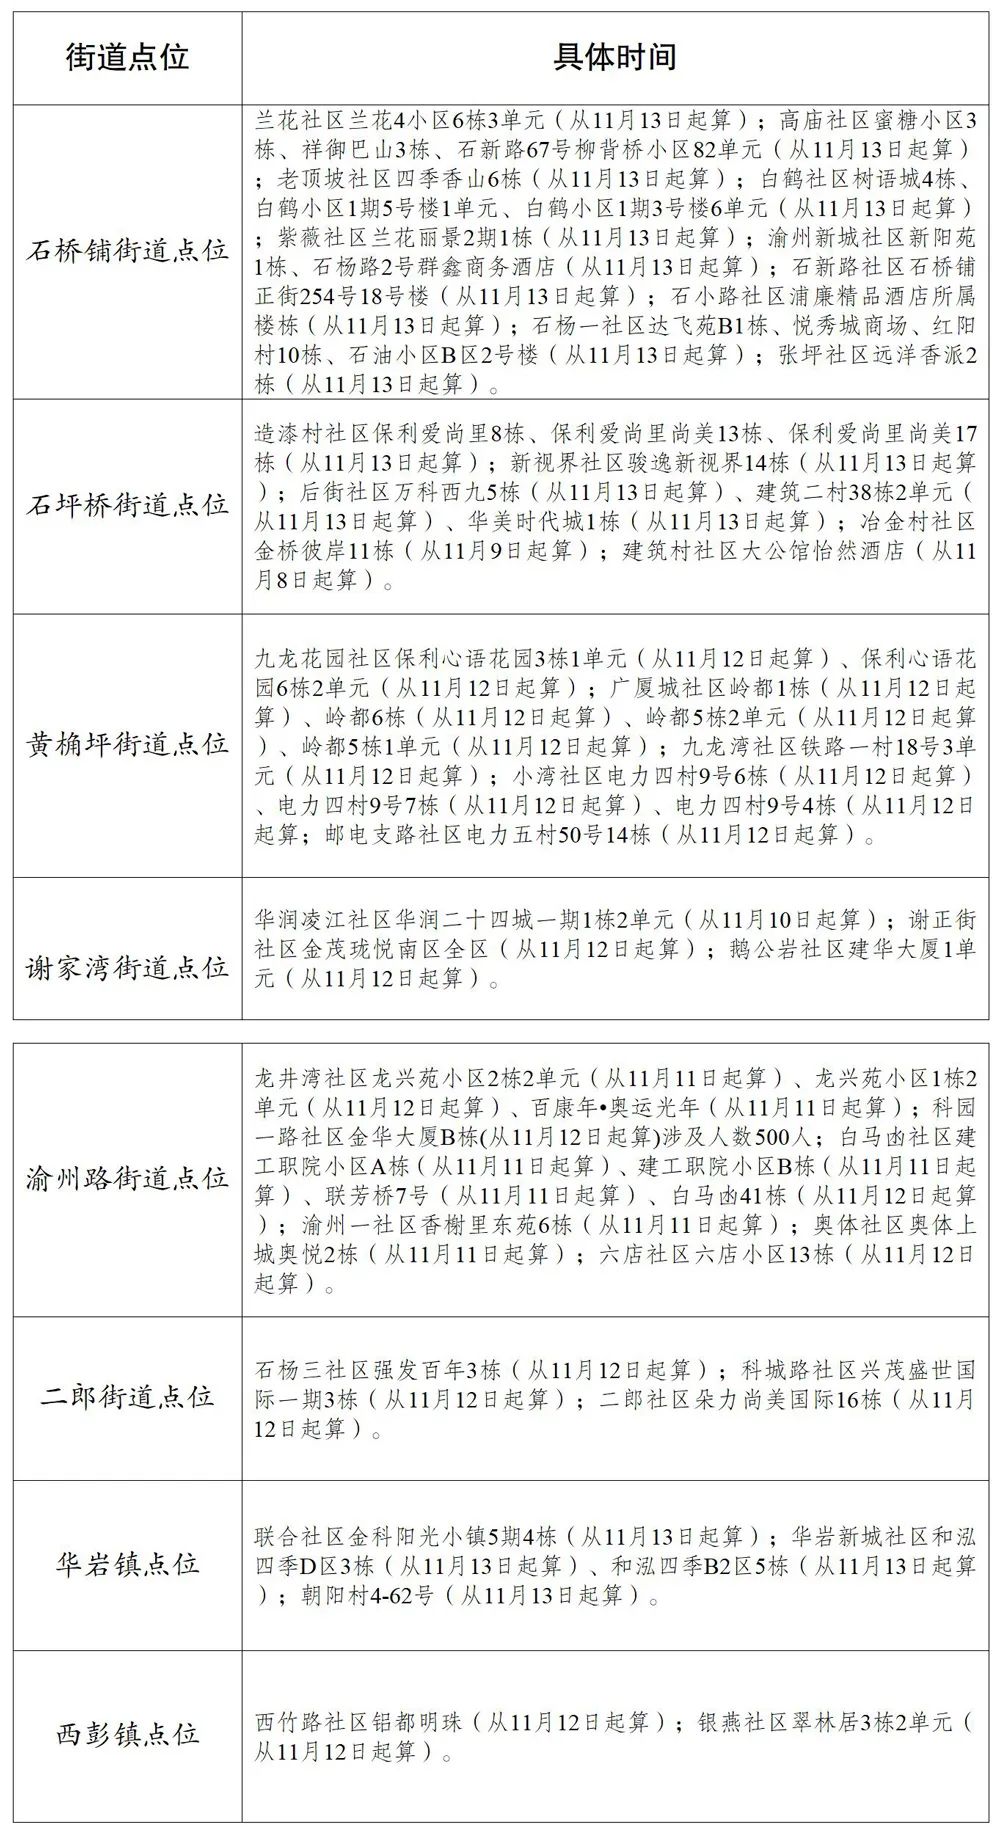 重庆市多区调整相关风险区域等级